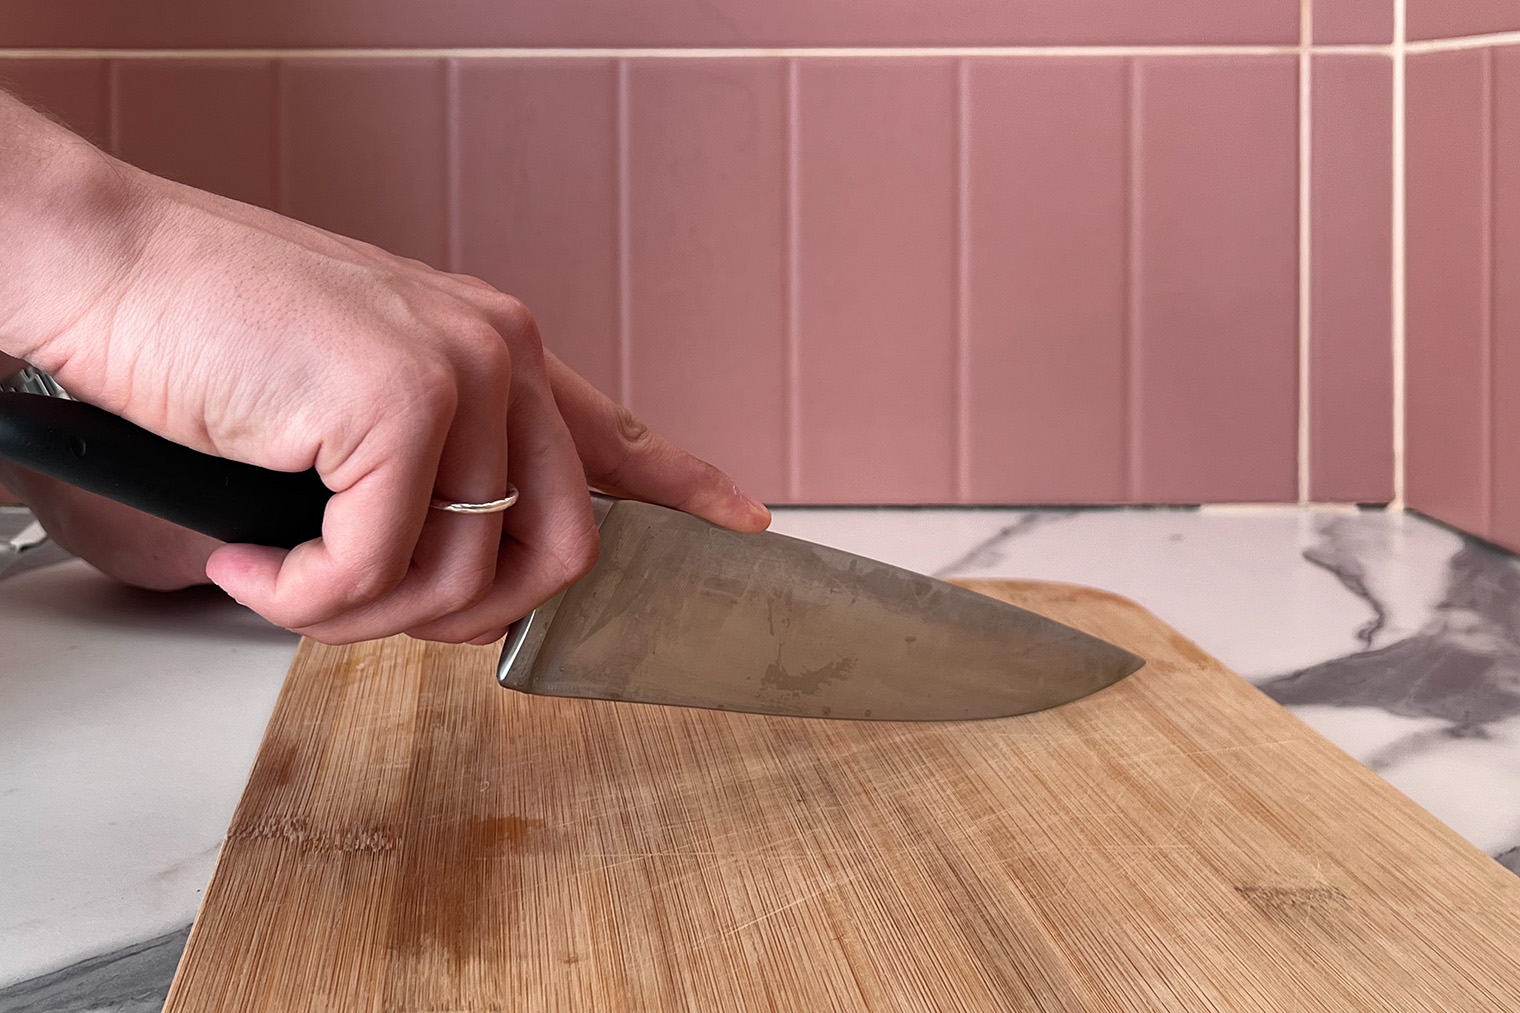 Если положить указательный палец на лезвие, не получится как следует давить на нож